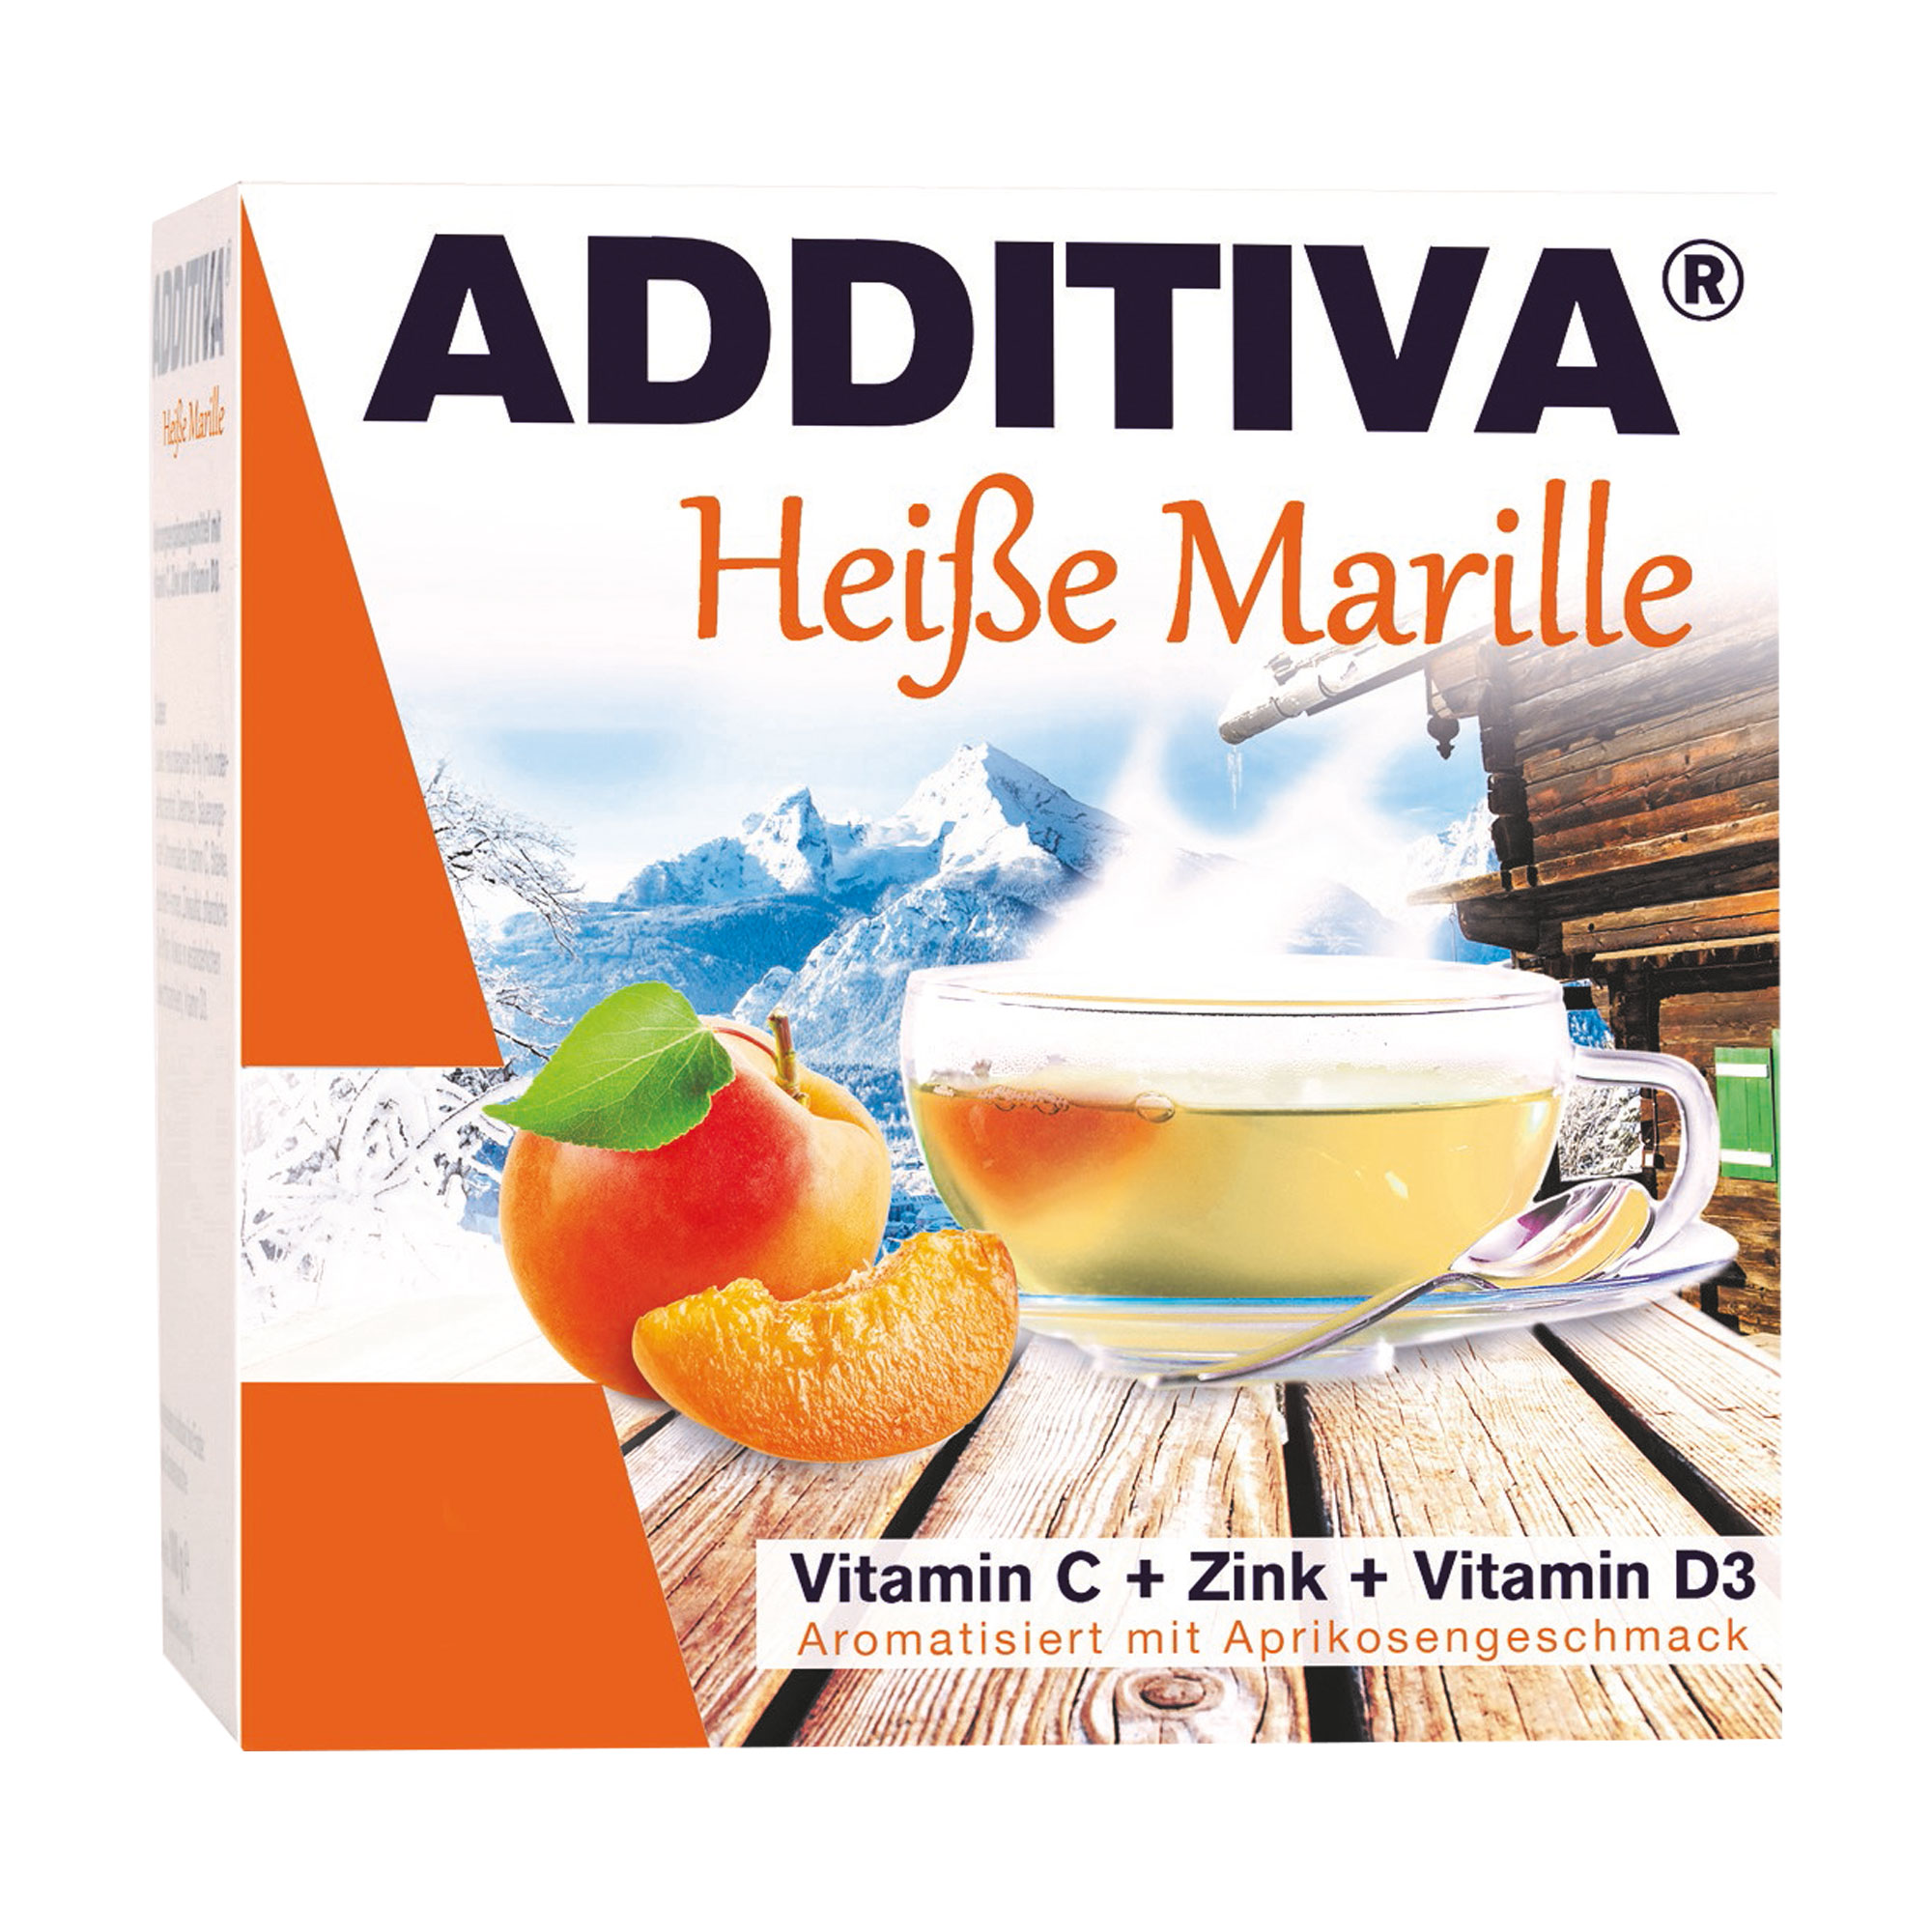 Nahrungsergänzungsmittel mit Vitamin C, Zink und Vitamin D3. Aromatisiert mit Aprikosengeschmack.